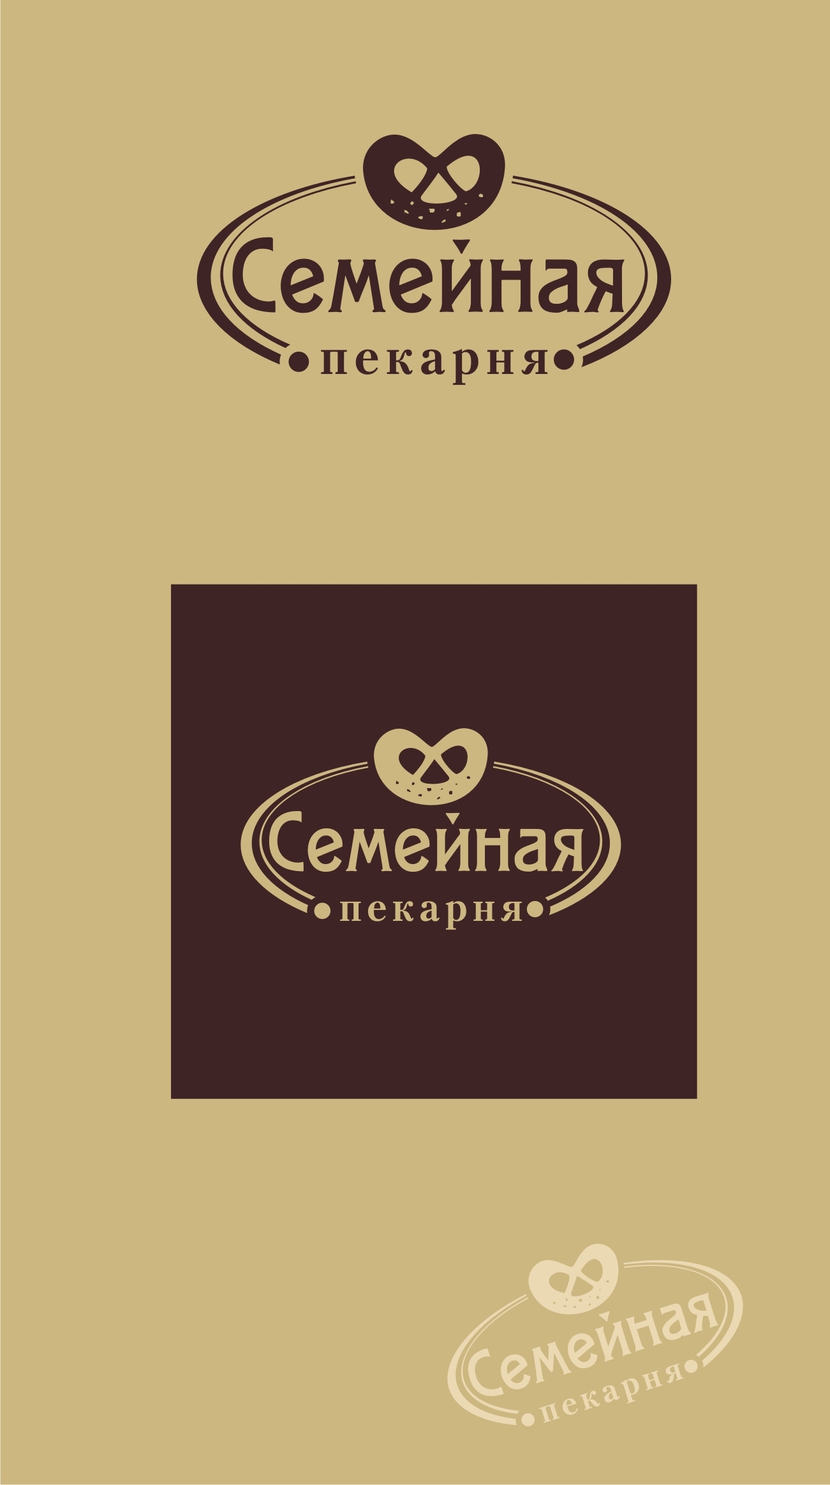 Логотип для сети пекарен внутри магазинов "Семейный"  -  автор Светлана Жданова